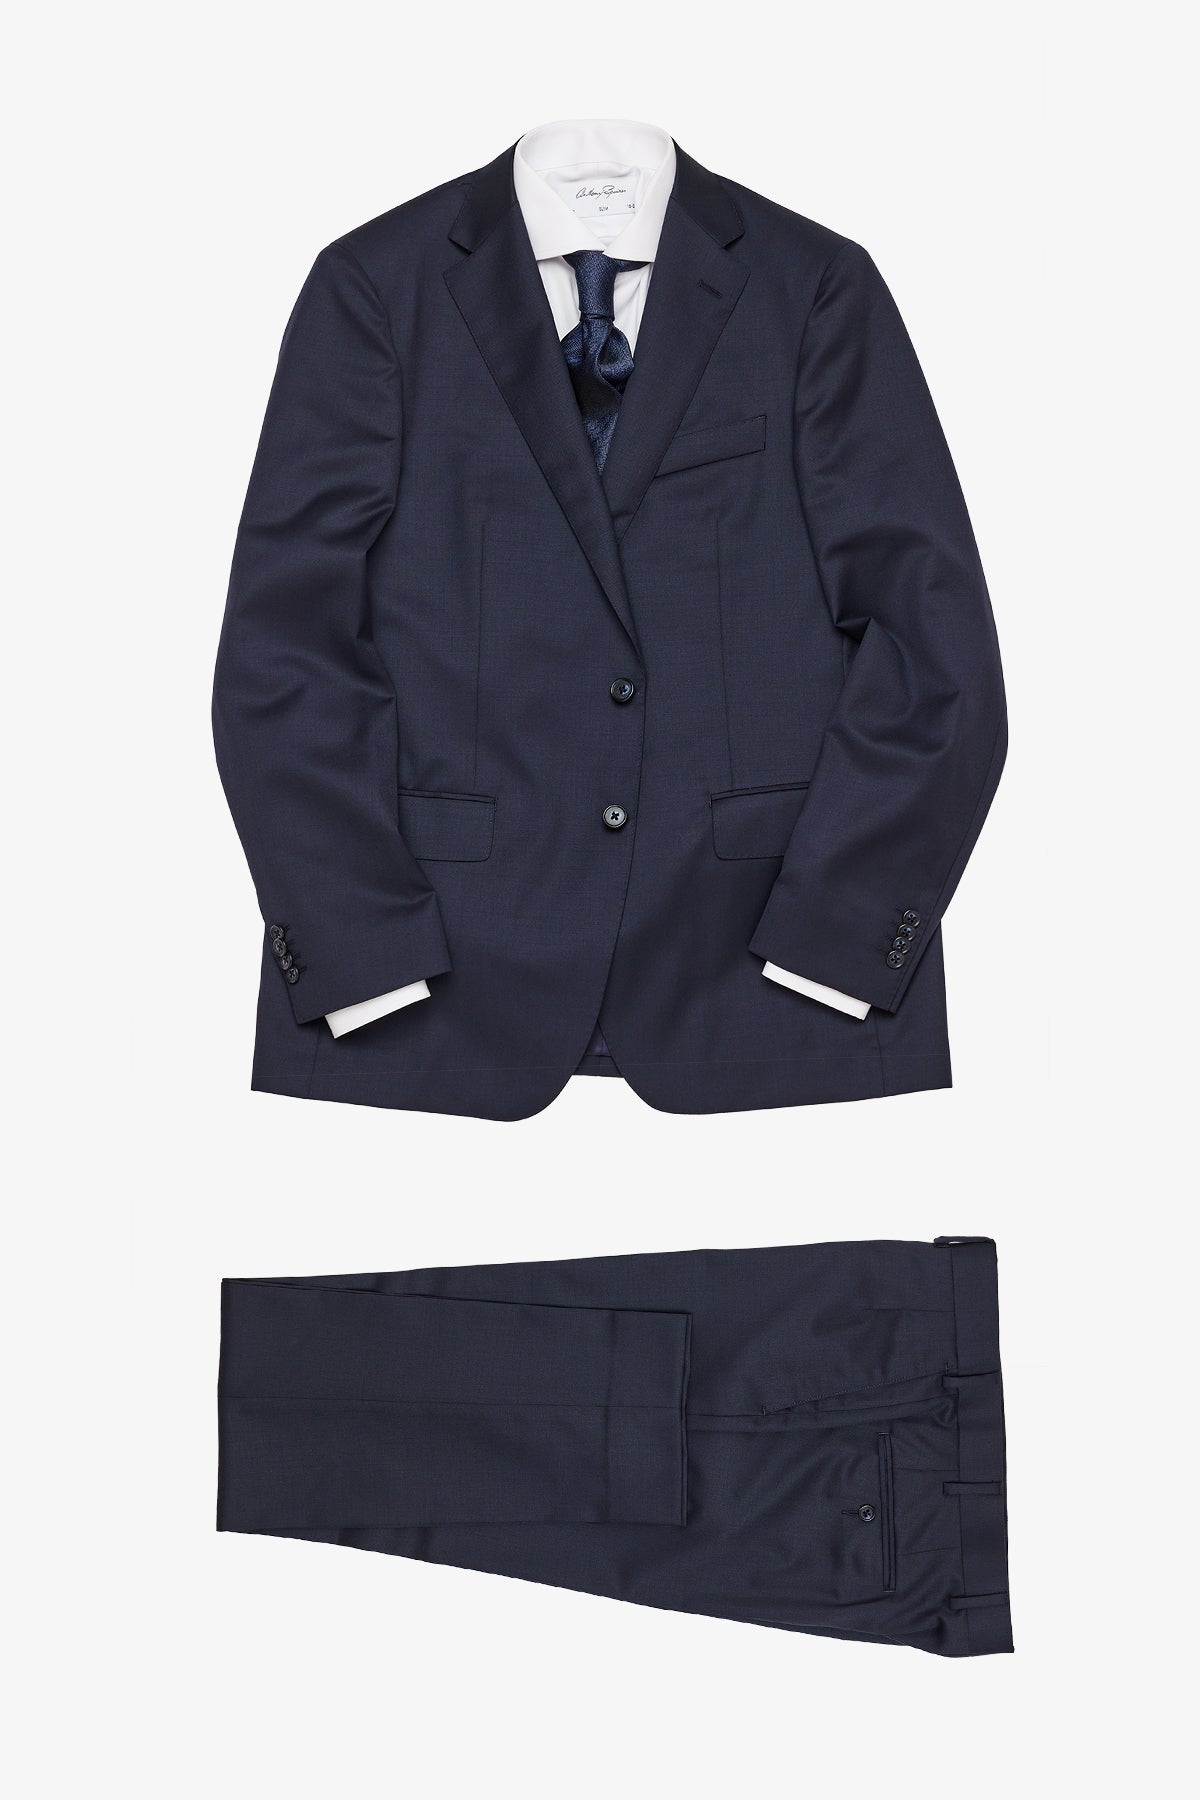 Sinclair - Navy Suit